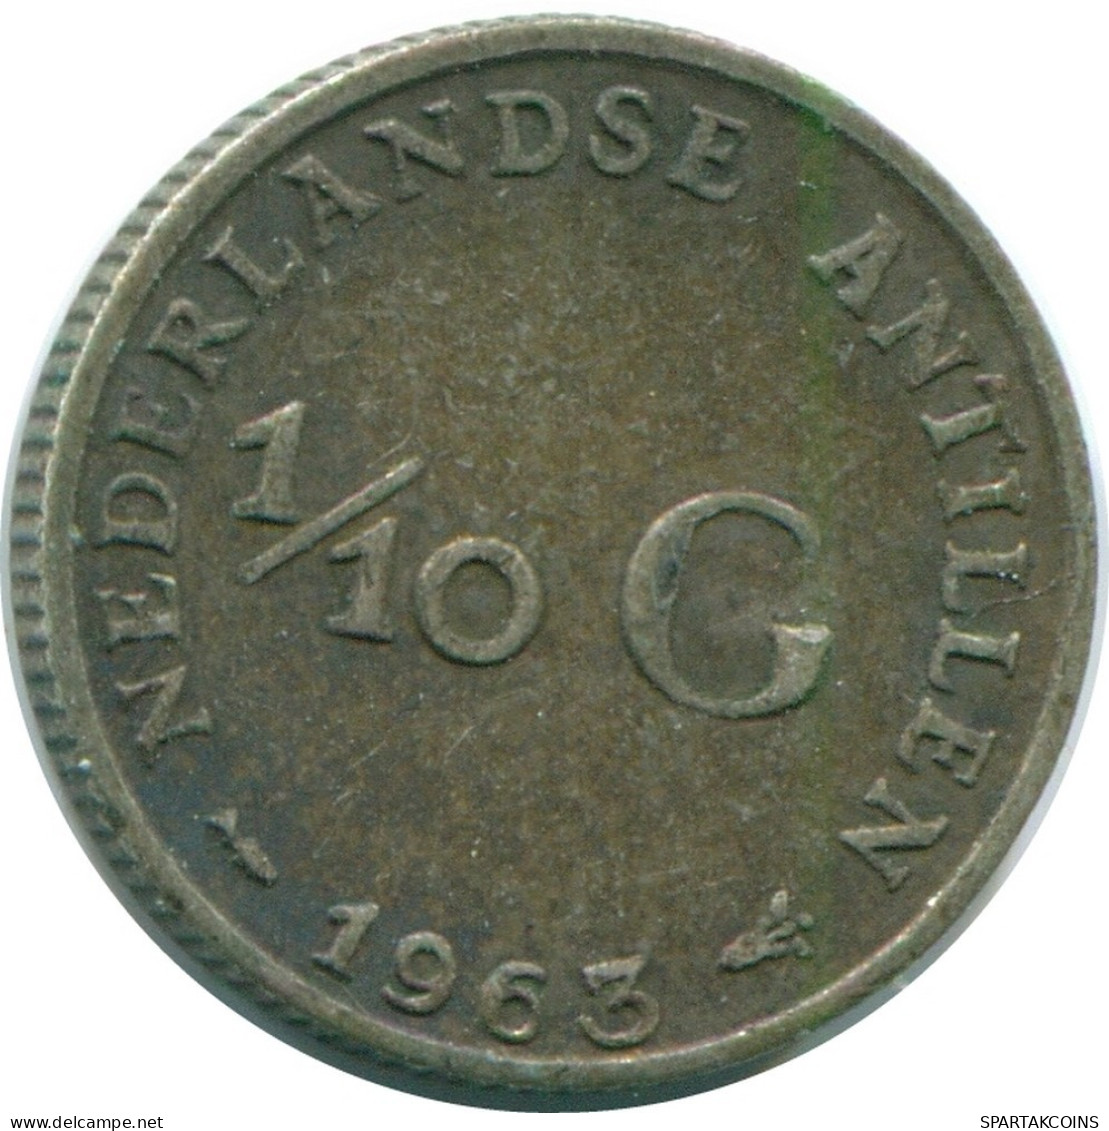 1/10 GULDEN 1963 NIEDERLÄNDISCHE ANTILLEN SILBER Koloniale Münze #NL12504.3.D.A - Antille Olandesi